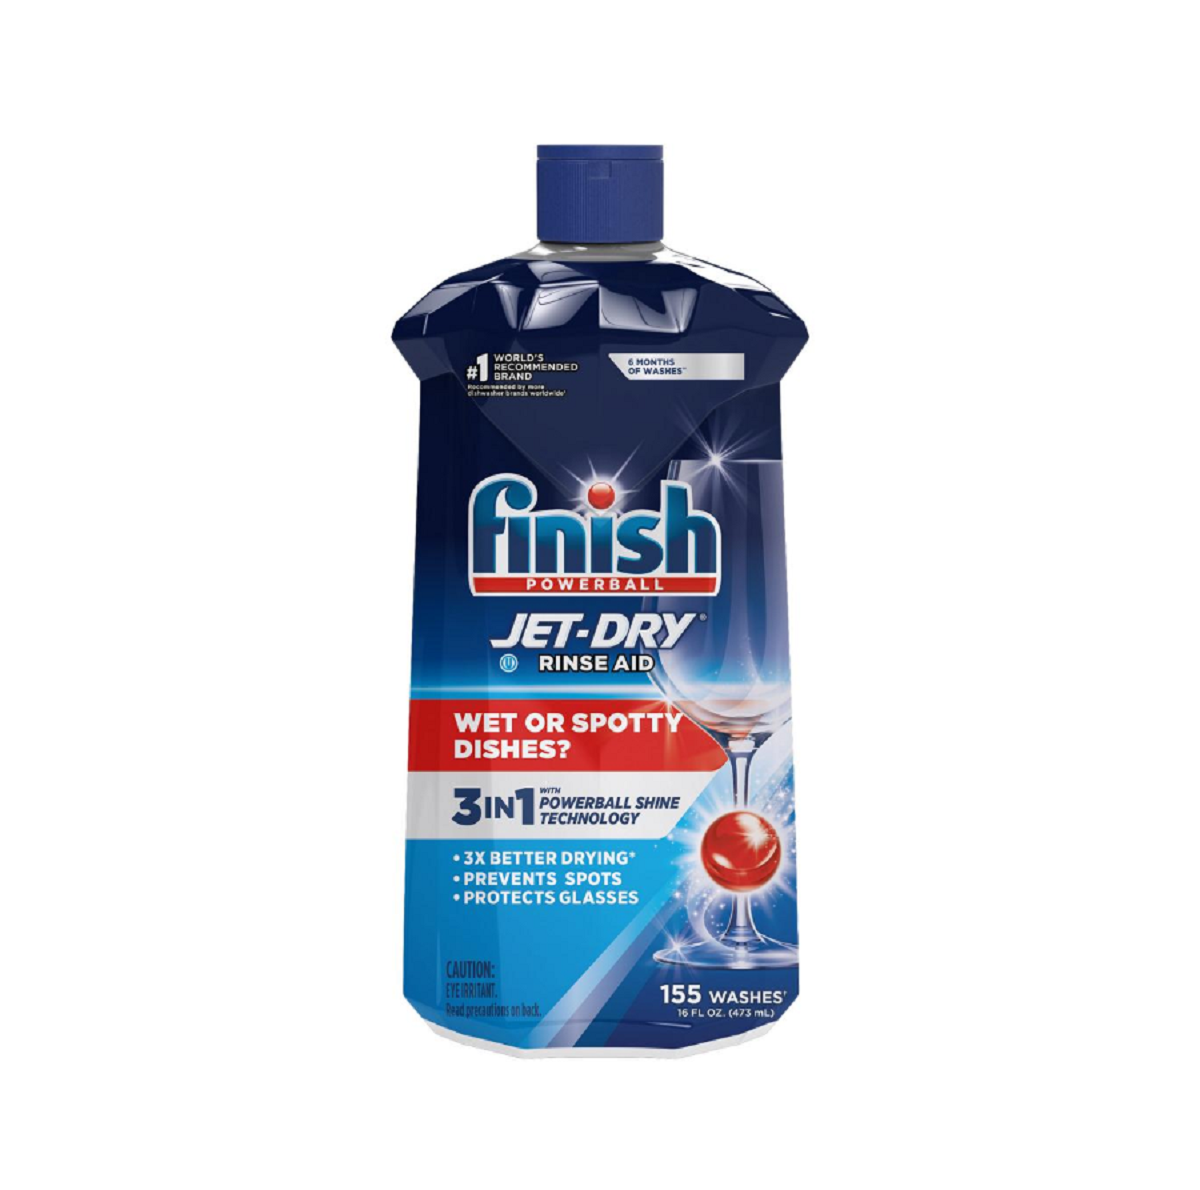 Finish Jet-Dry Rinse Aid, Finish Dishwasher printable coupon